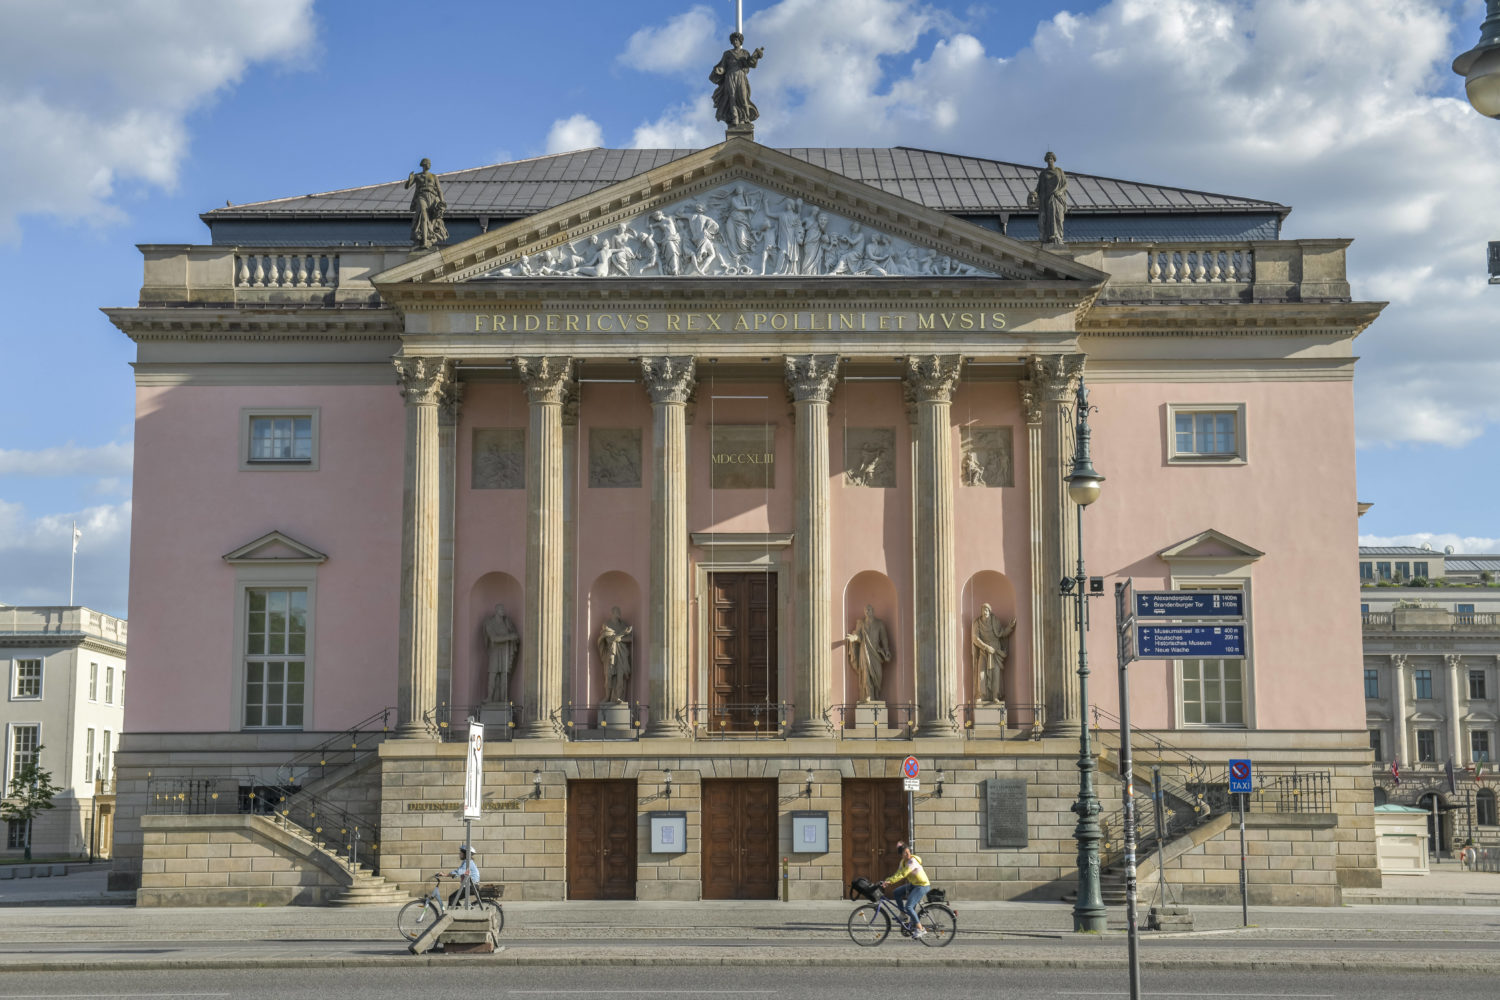 Berühmte Architekten Berlin: Staatsoper Unter den Linden in Mitte, ursprünglich erbaut nach den Plänen von Georg Wenzeslaus von Knobelsdorff. 